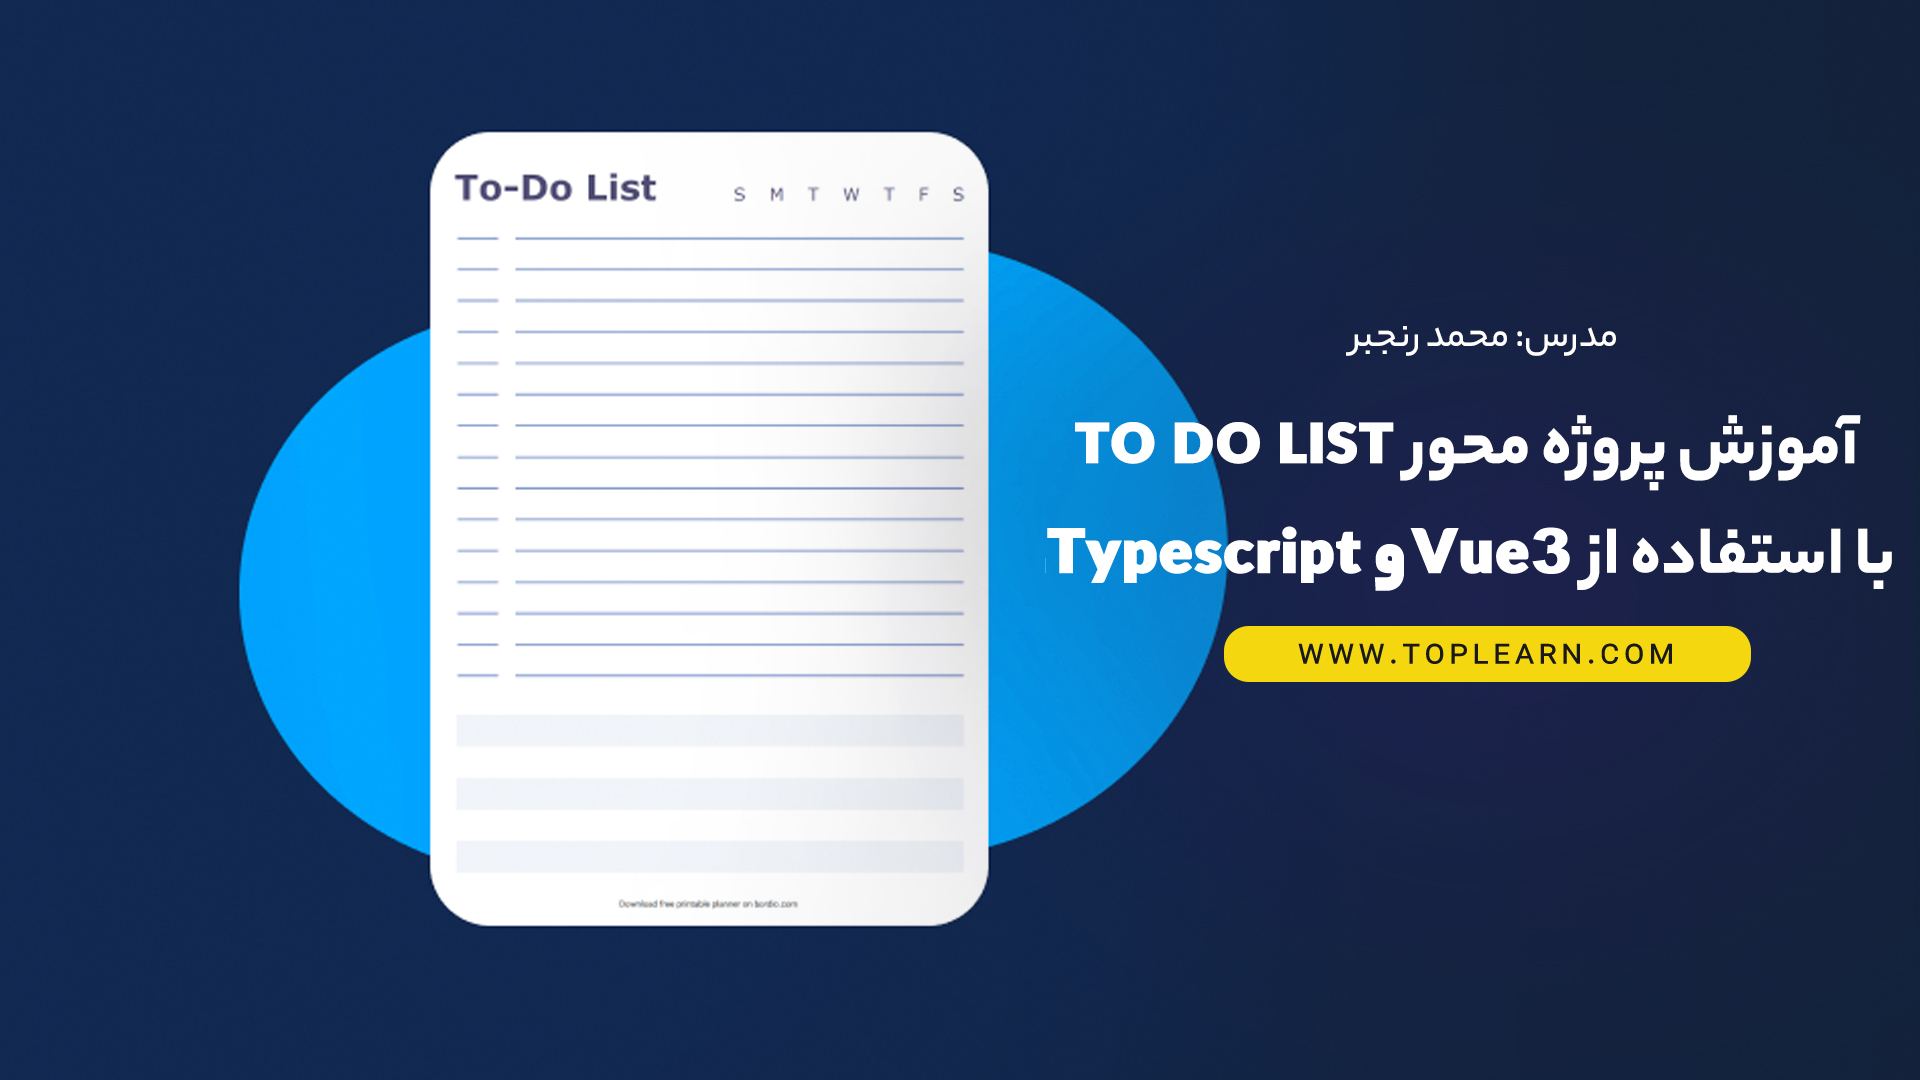 آموزش پروژه محور To Do List با استفاده از Vue 3 و Typescript